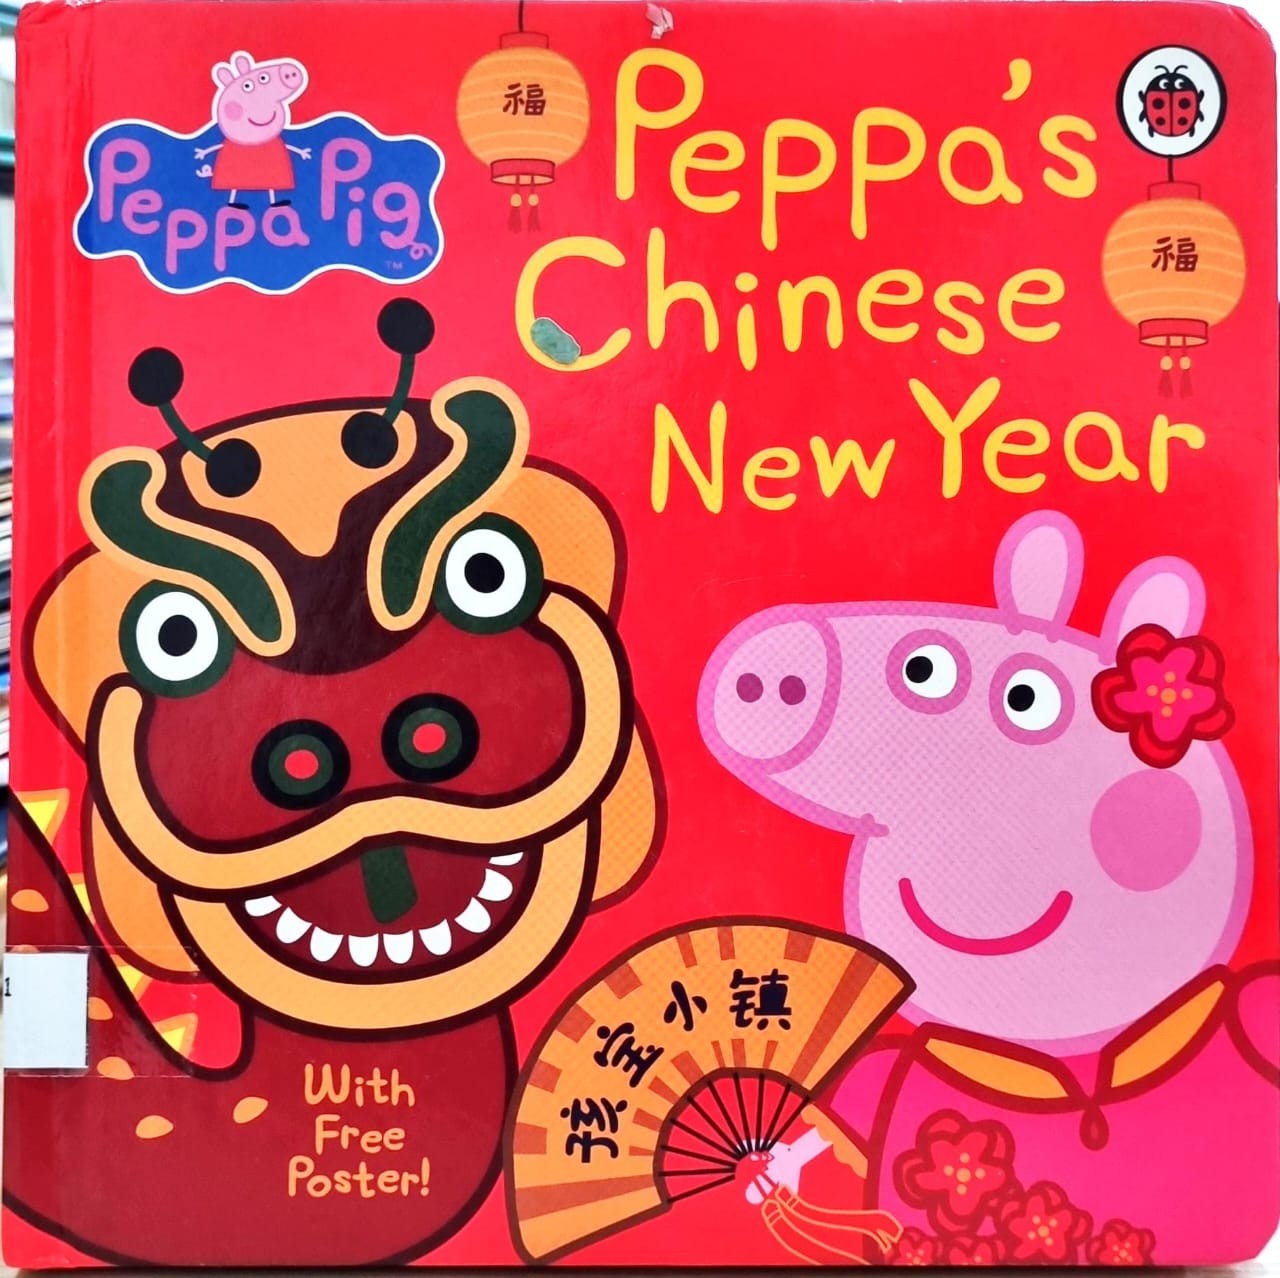 Peppa's Chinese New Year